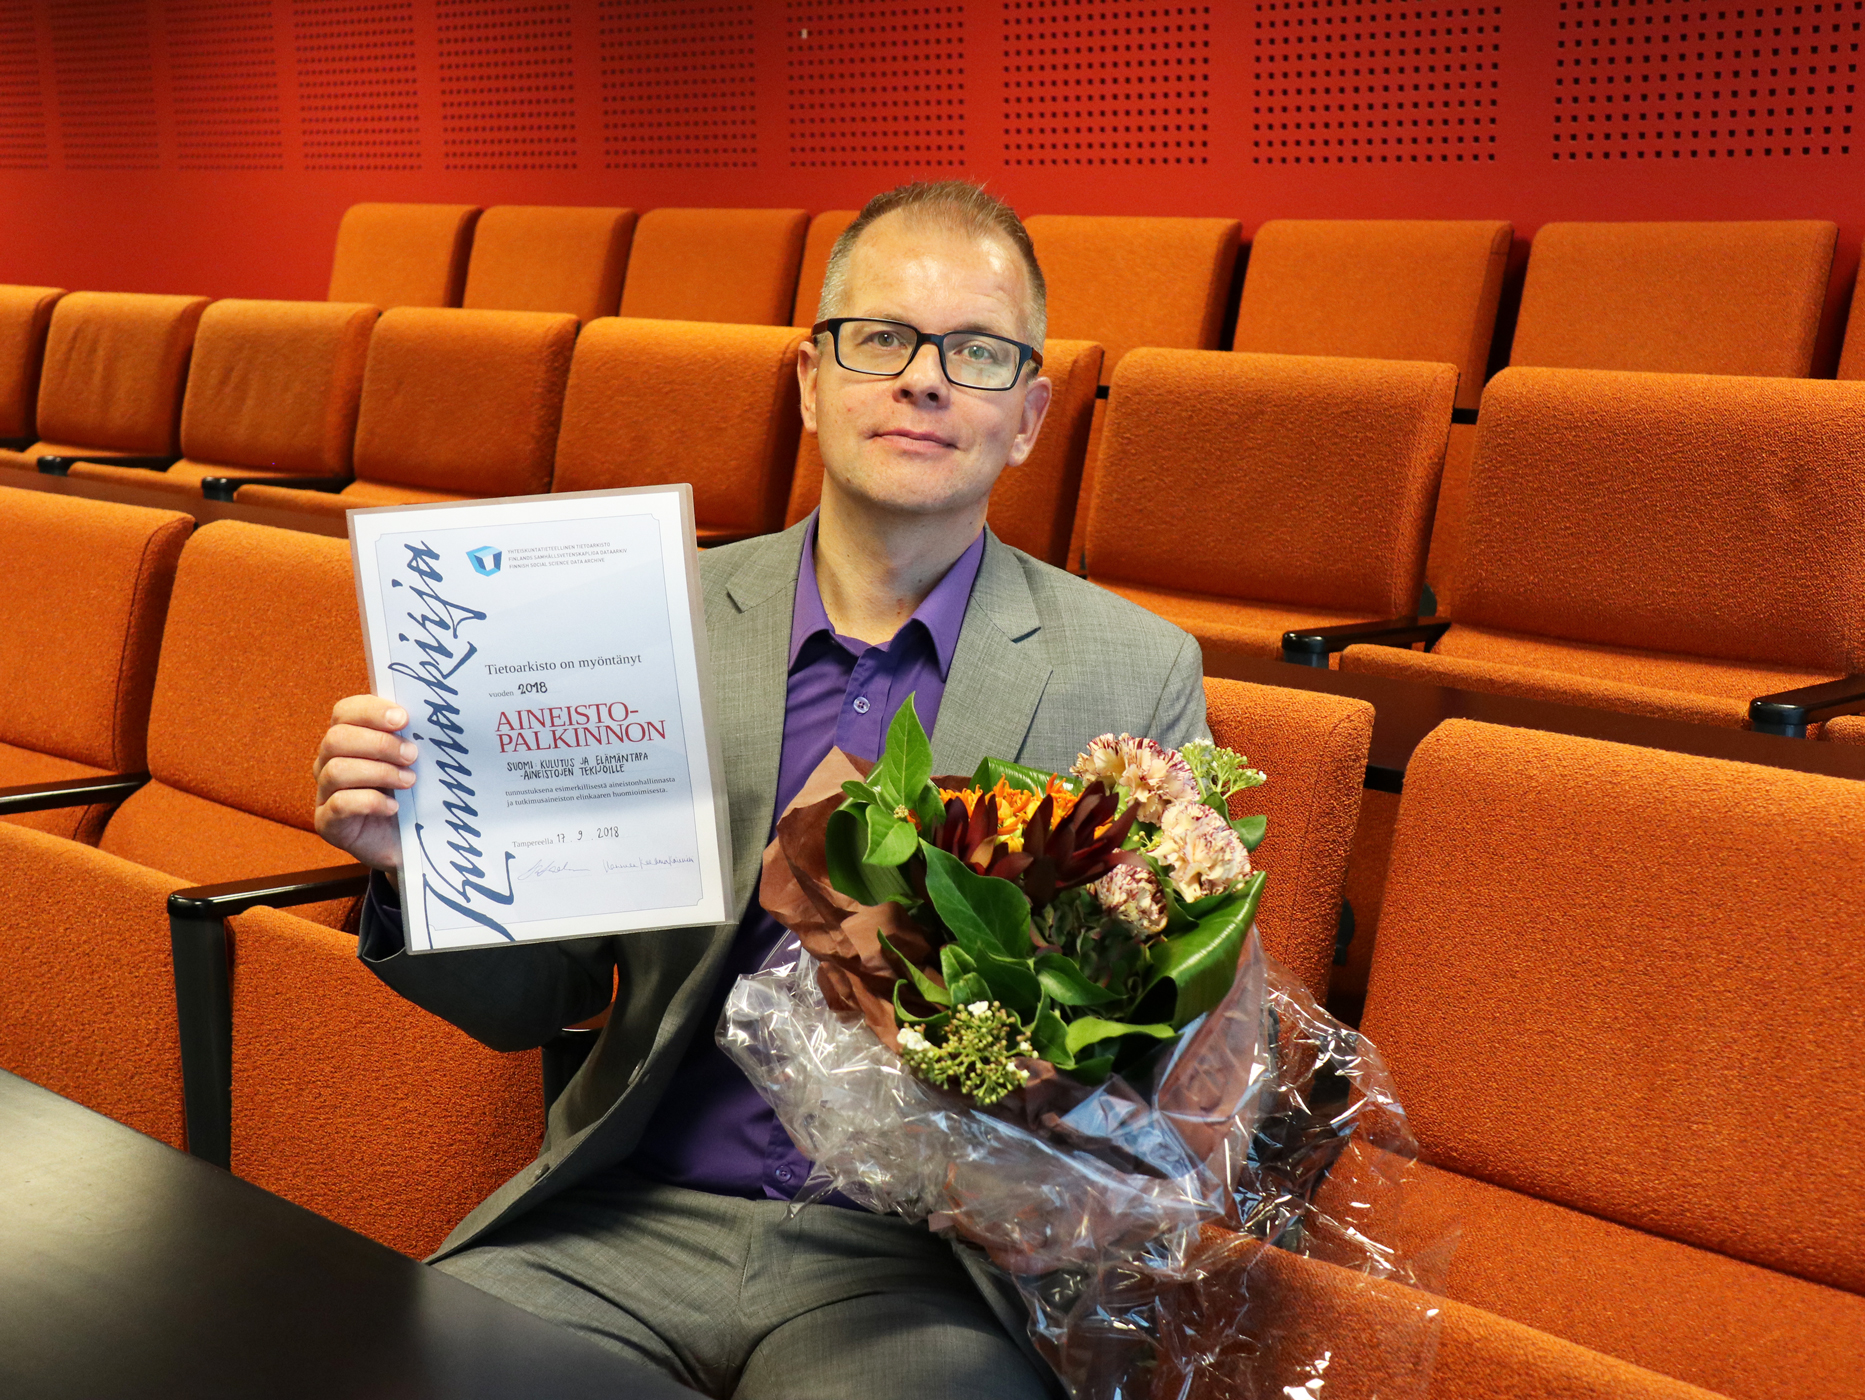 Pekka Räsänen accepts FSD's Data Management Award